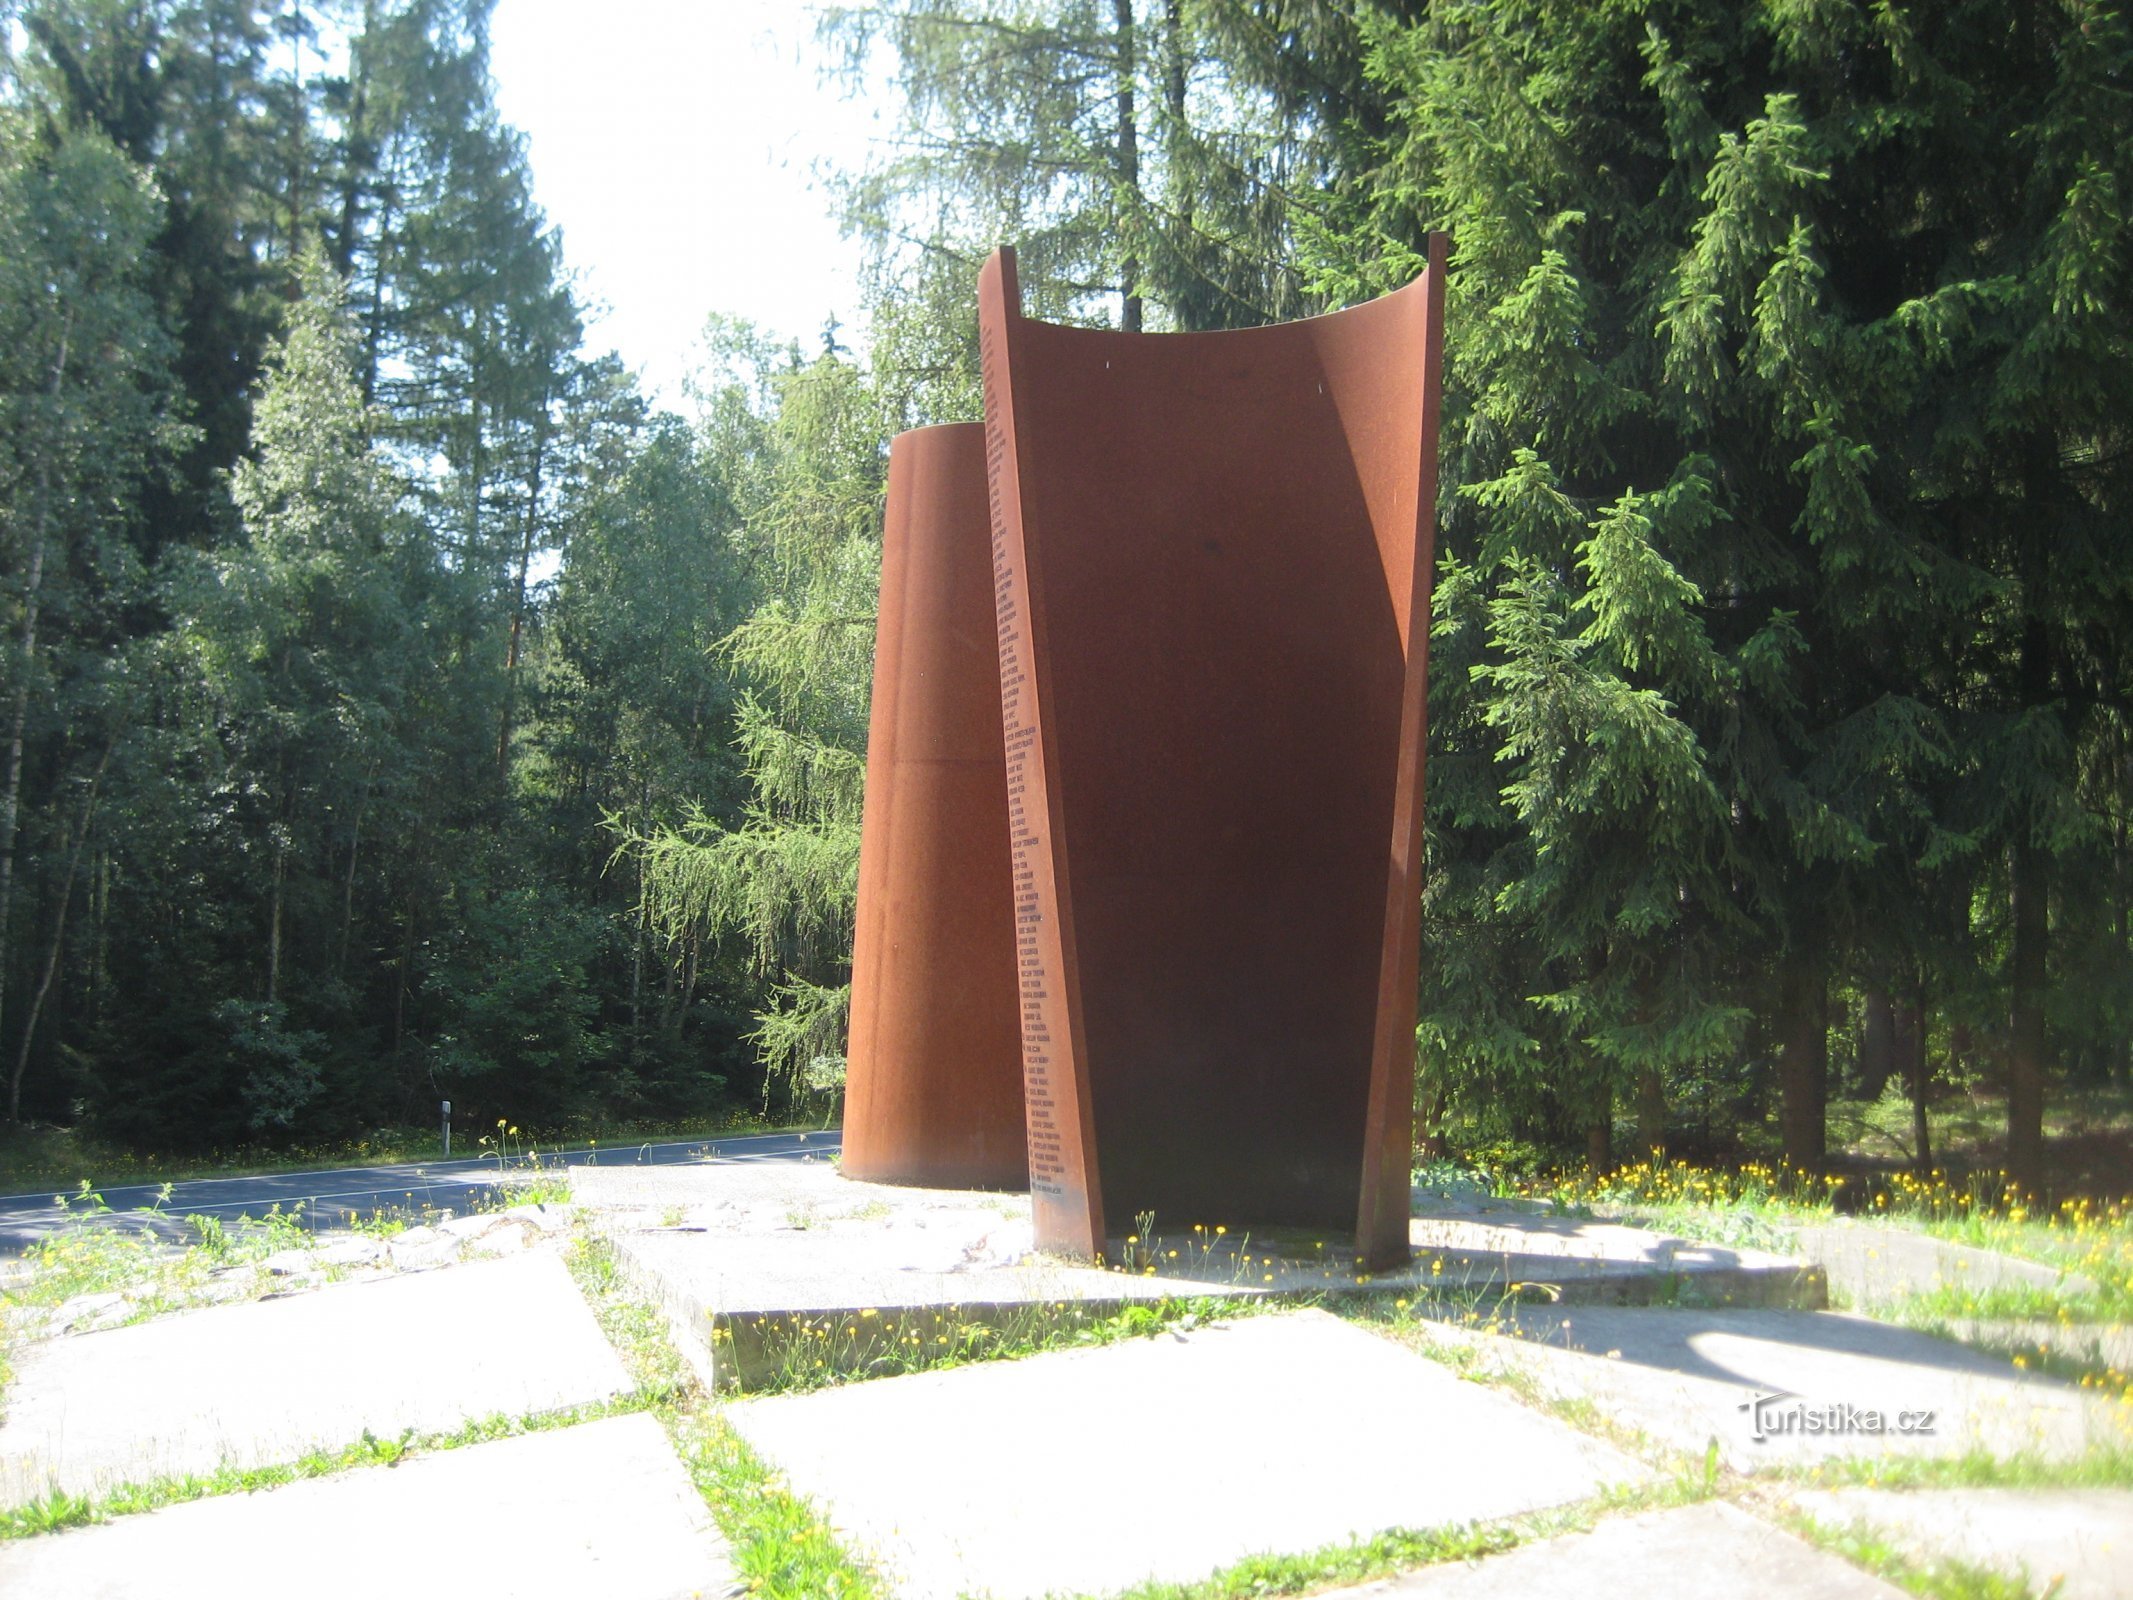 Monumento às vítimas da Cortina de Ferro - Cheb